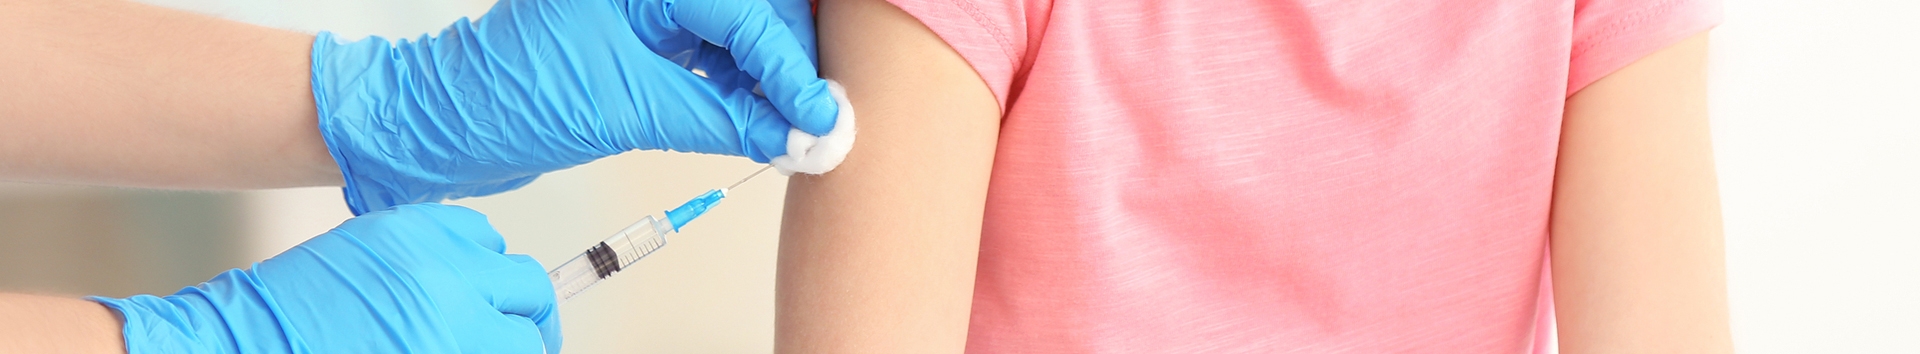 Reação da vacina de febre amarela em bebê: Evitando o pior